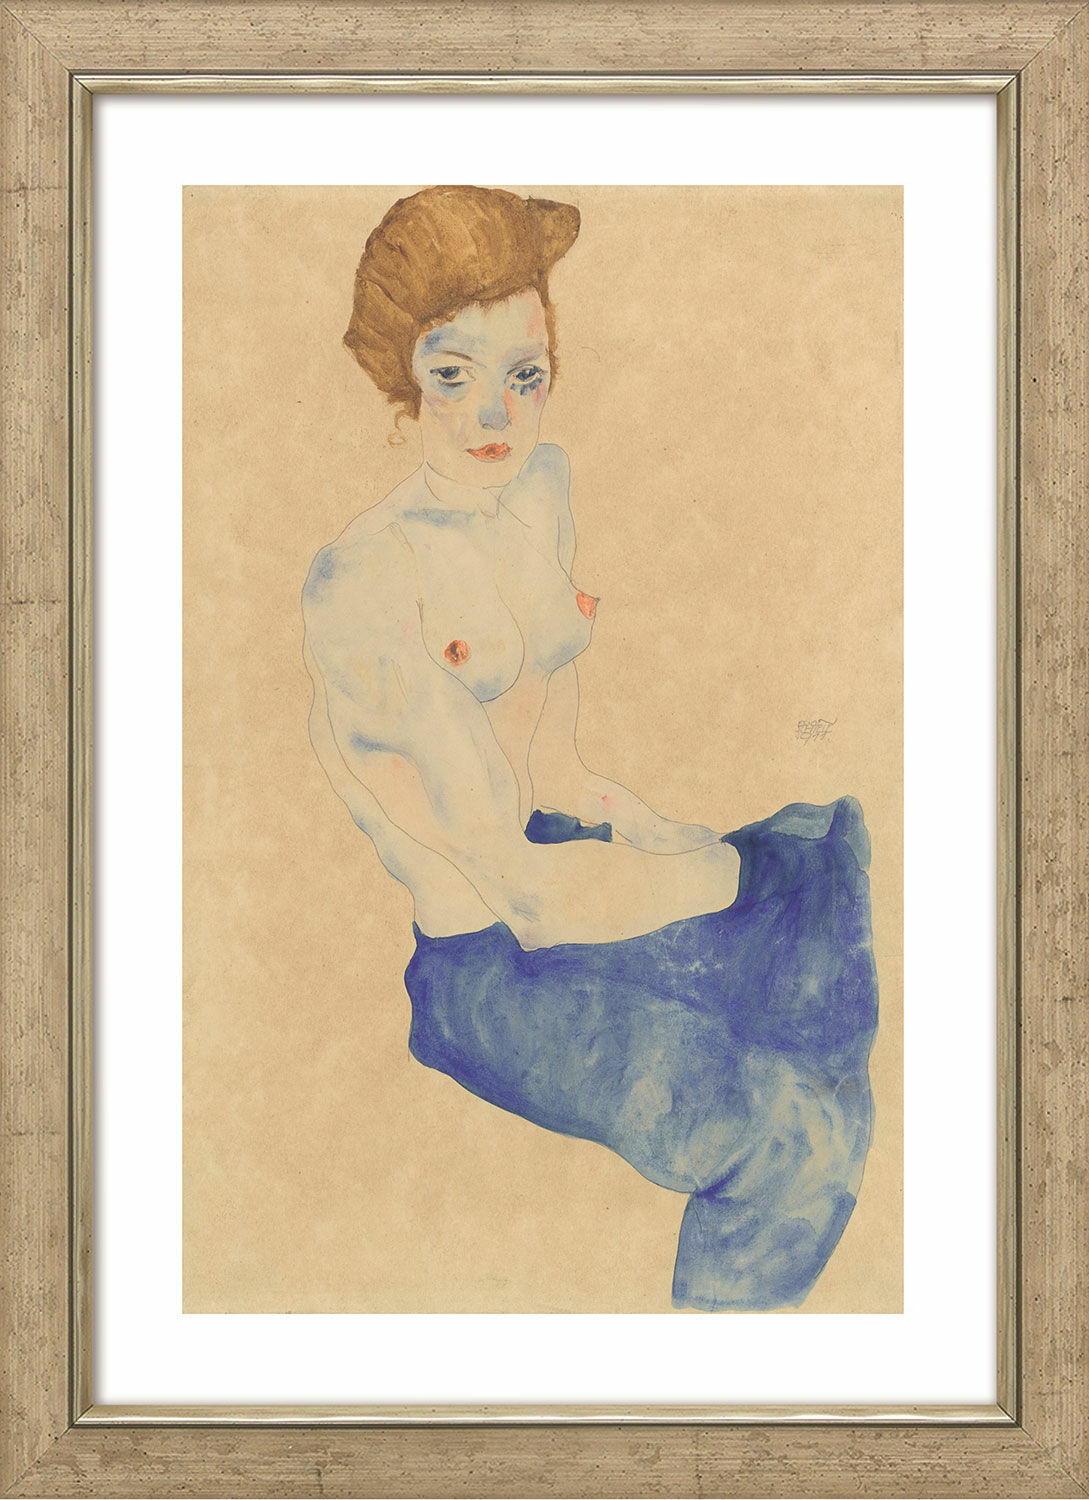 Beeld "Zittend meisje met ontbloot bovenlichaam en lichtblauwe rok" (1911), ingelijst von Egon Schiele